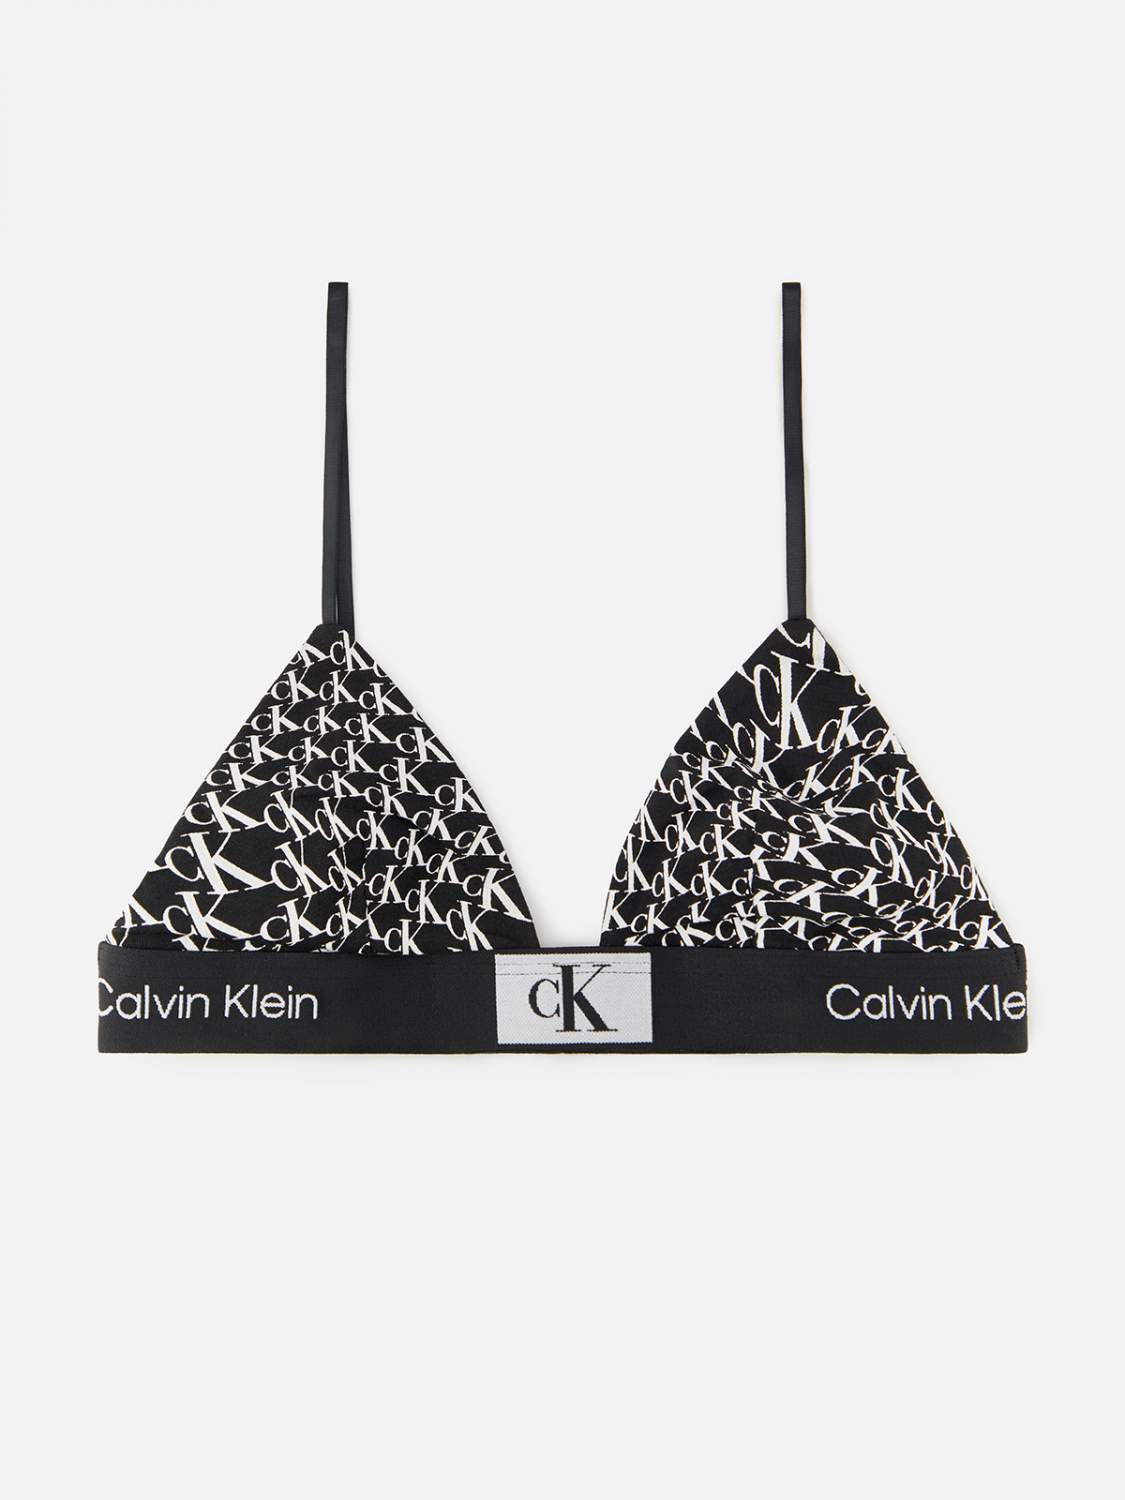 Хлопковые женские бюстгальтеры Calvin Klein - купить в интернет